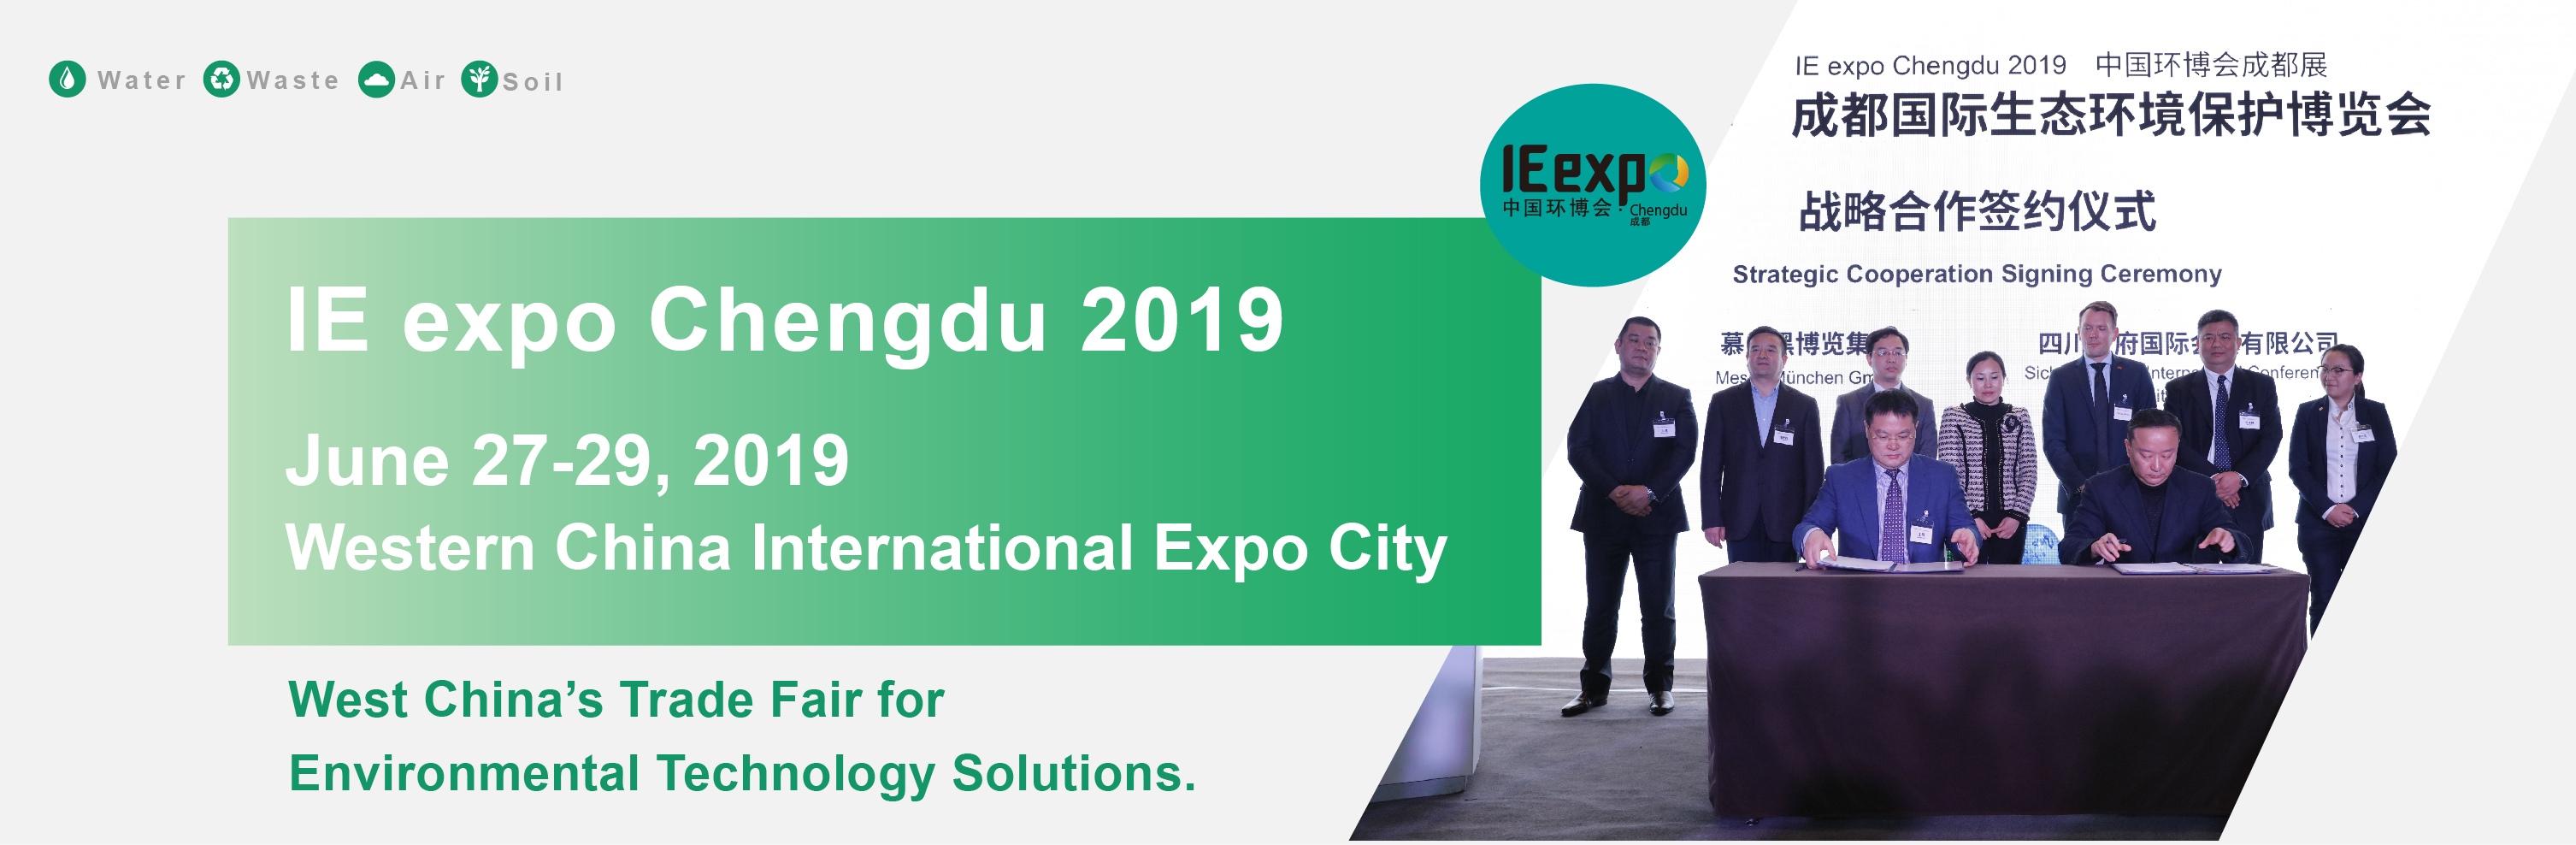 IE expo Chengdu 2019